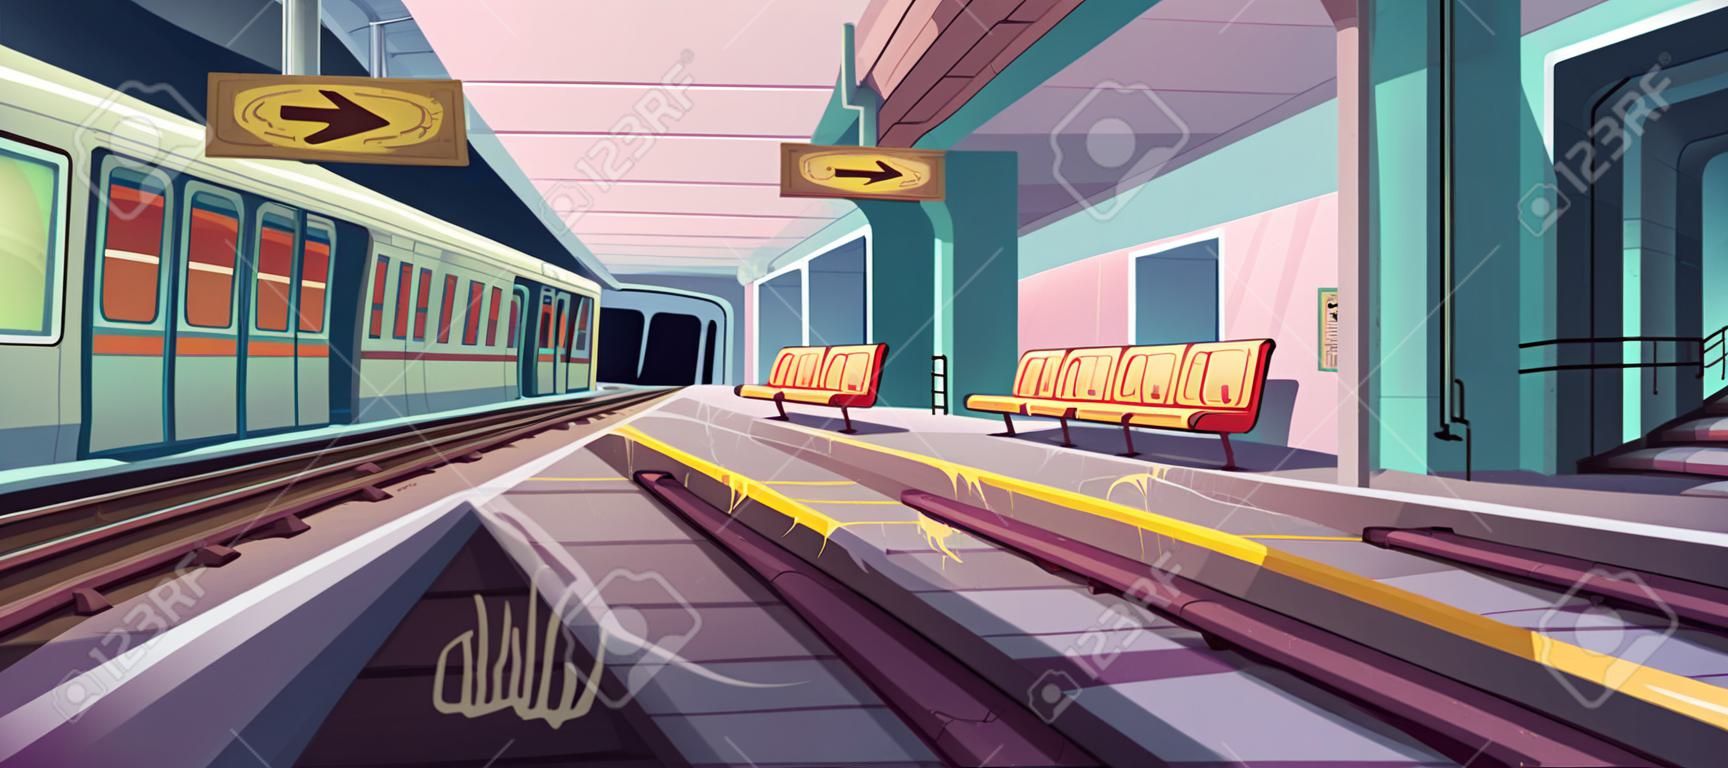 Stacja metra, pociąg przyjeżdżający do pustej platformy metra z podziemnego tunelu. wektorowa kreskówka ilustracja bałaganu wnętrza metra ze śmieciami, graffiti na siedzeniach i ścianach w obszarze getta